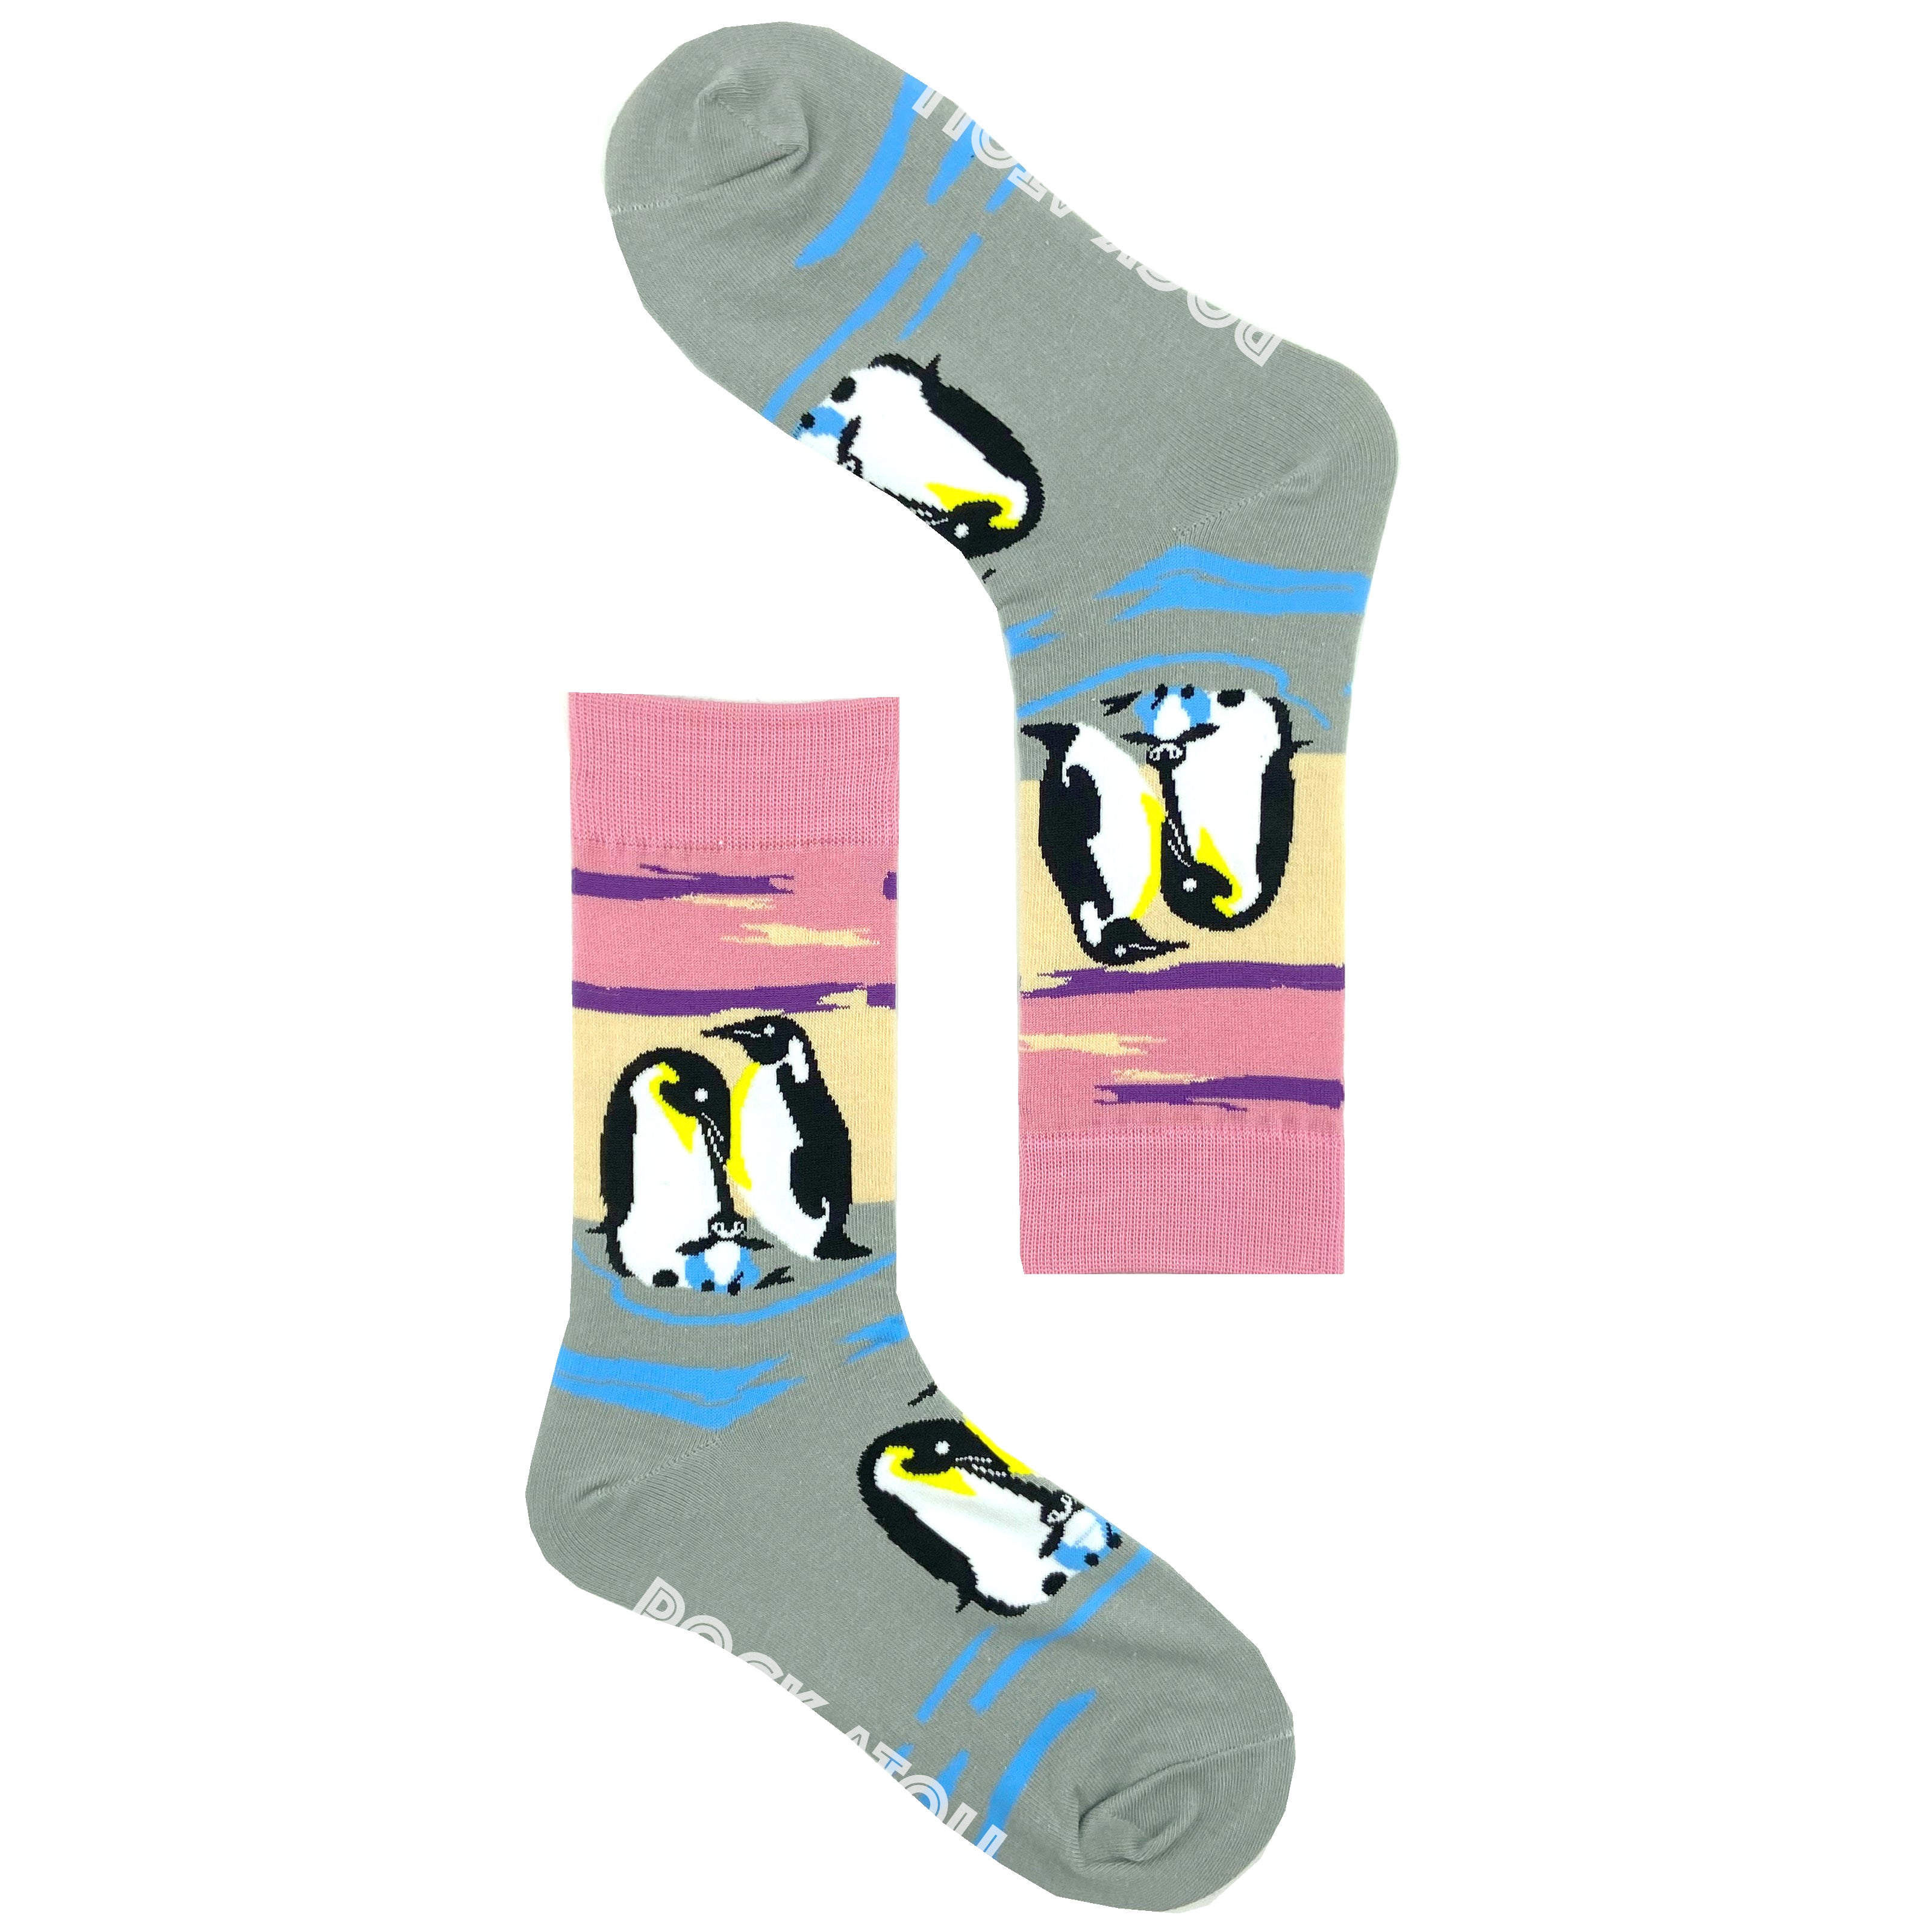 Adorable King Penguin Family All Over Pattern Women's Novelty Socks